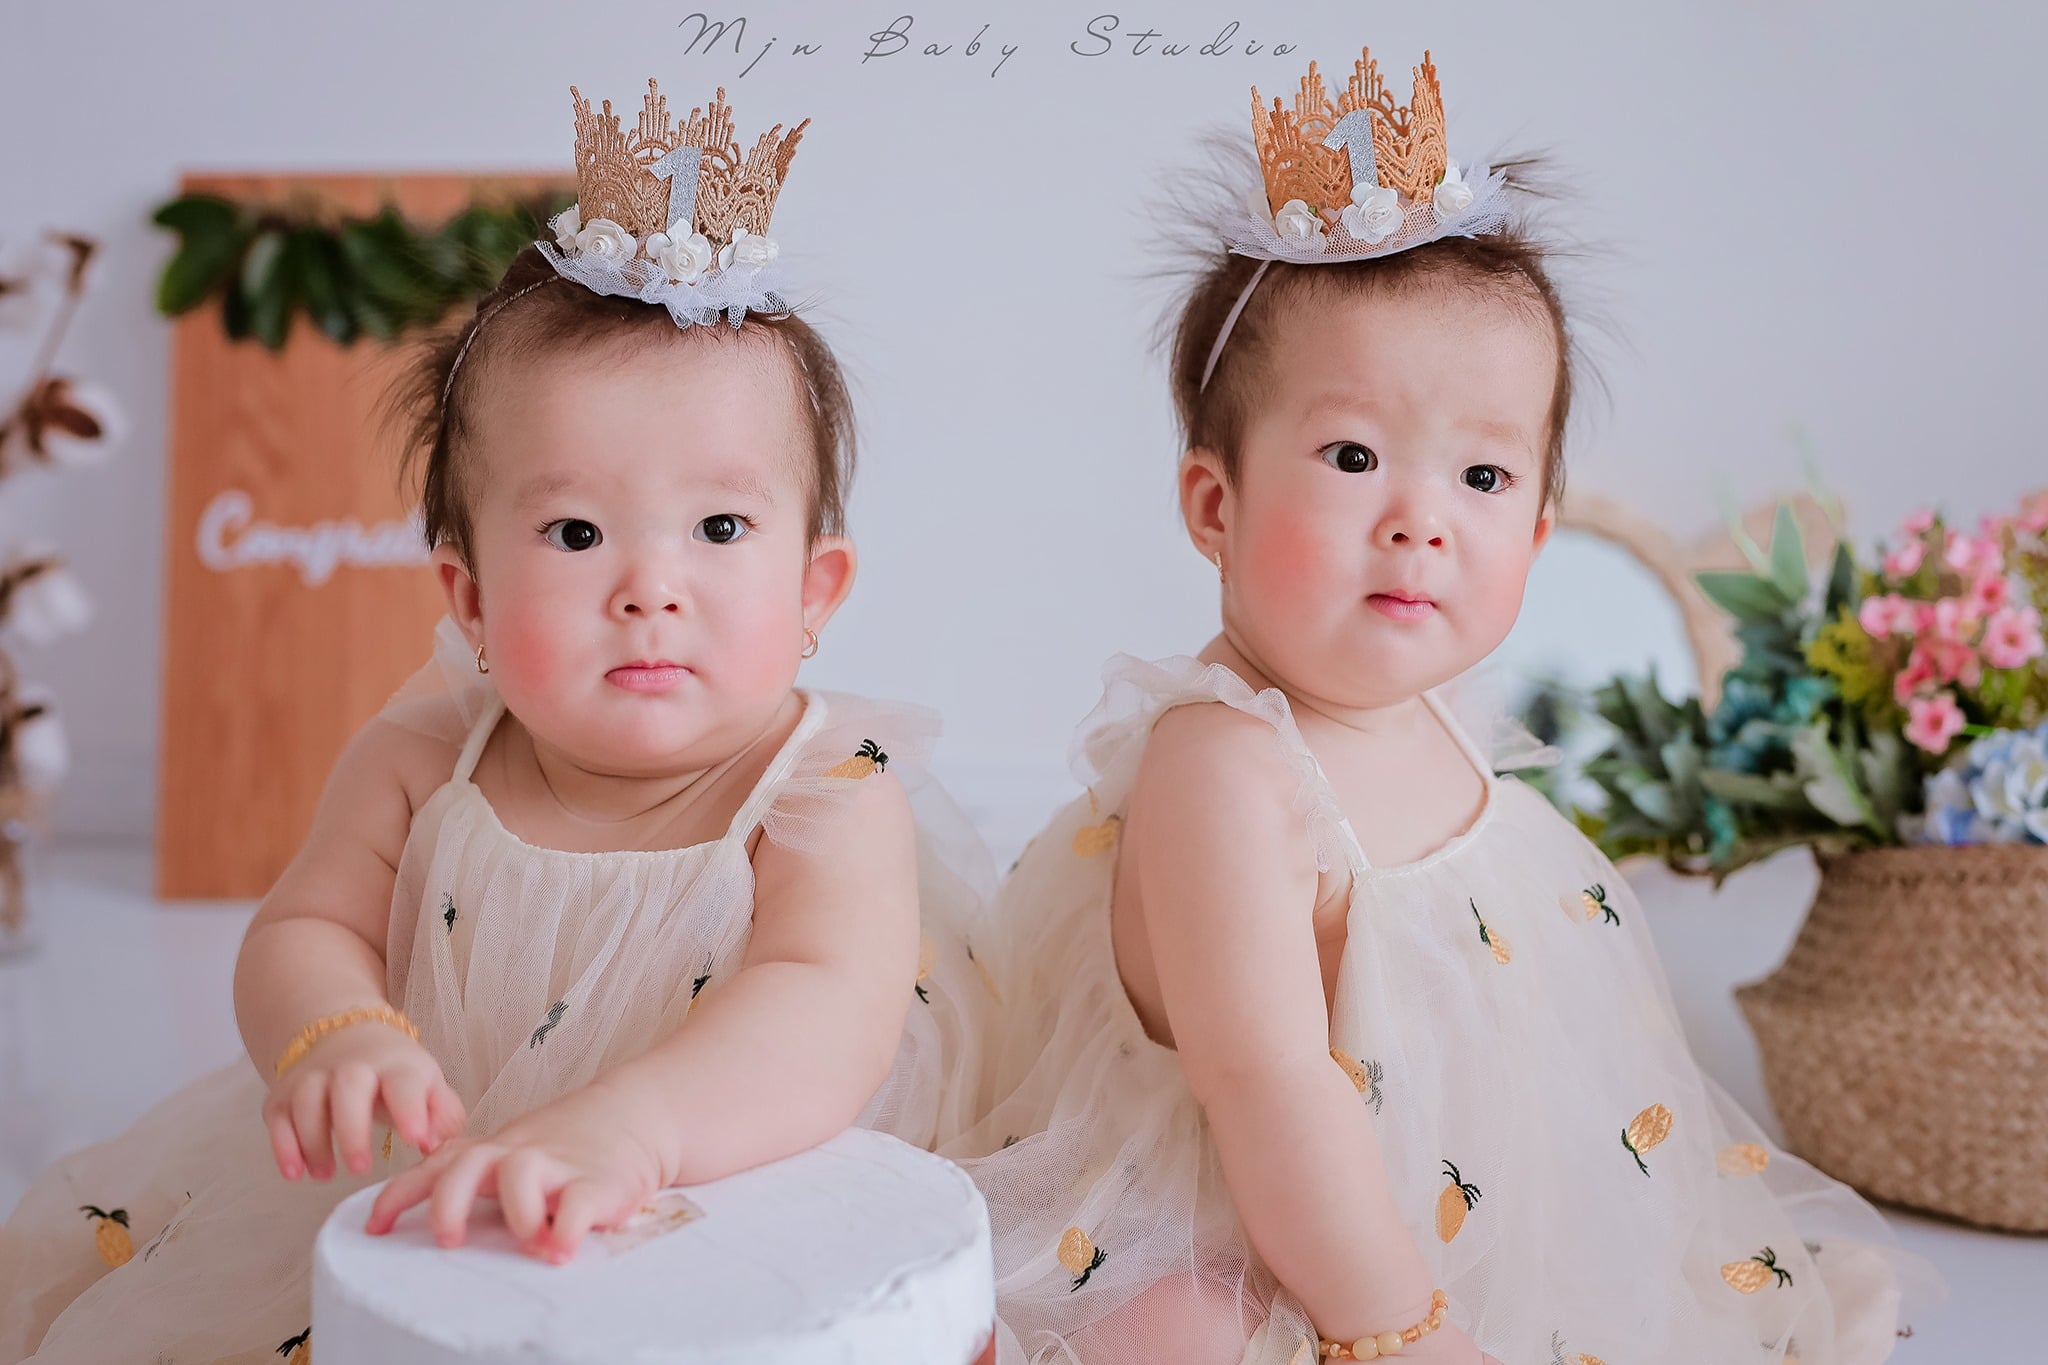 Top 7 Studio chụp ảnh cho bé đẹp và chất lượng nhất Cần Thơ - Mjn Baby Studio